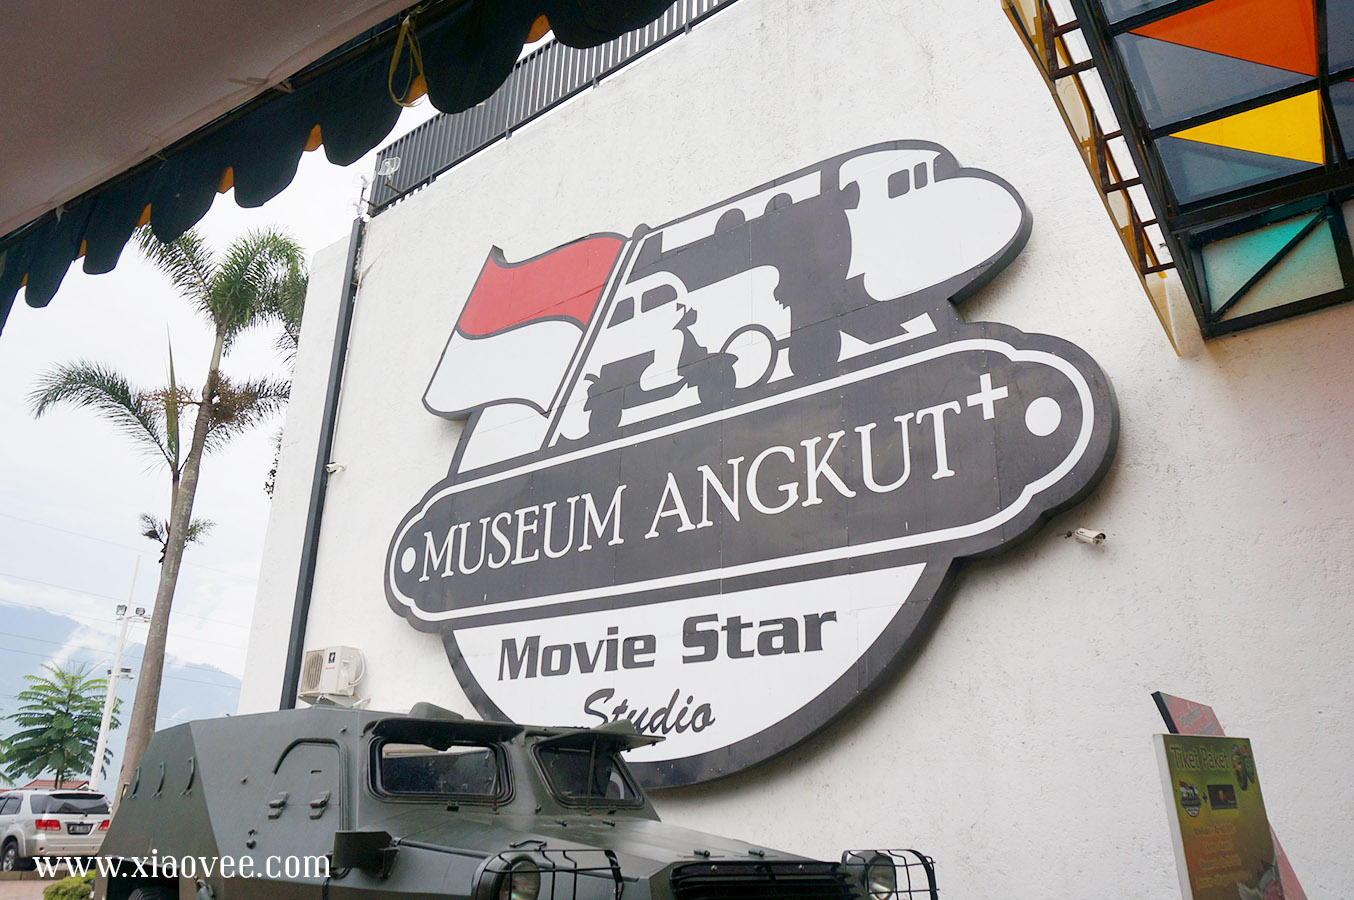 Museum Angkut, Transport Museum in Batu Indonesia review